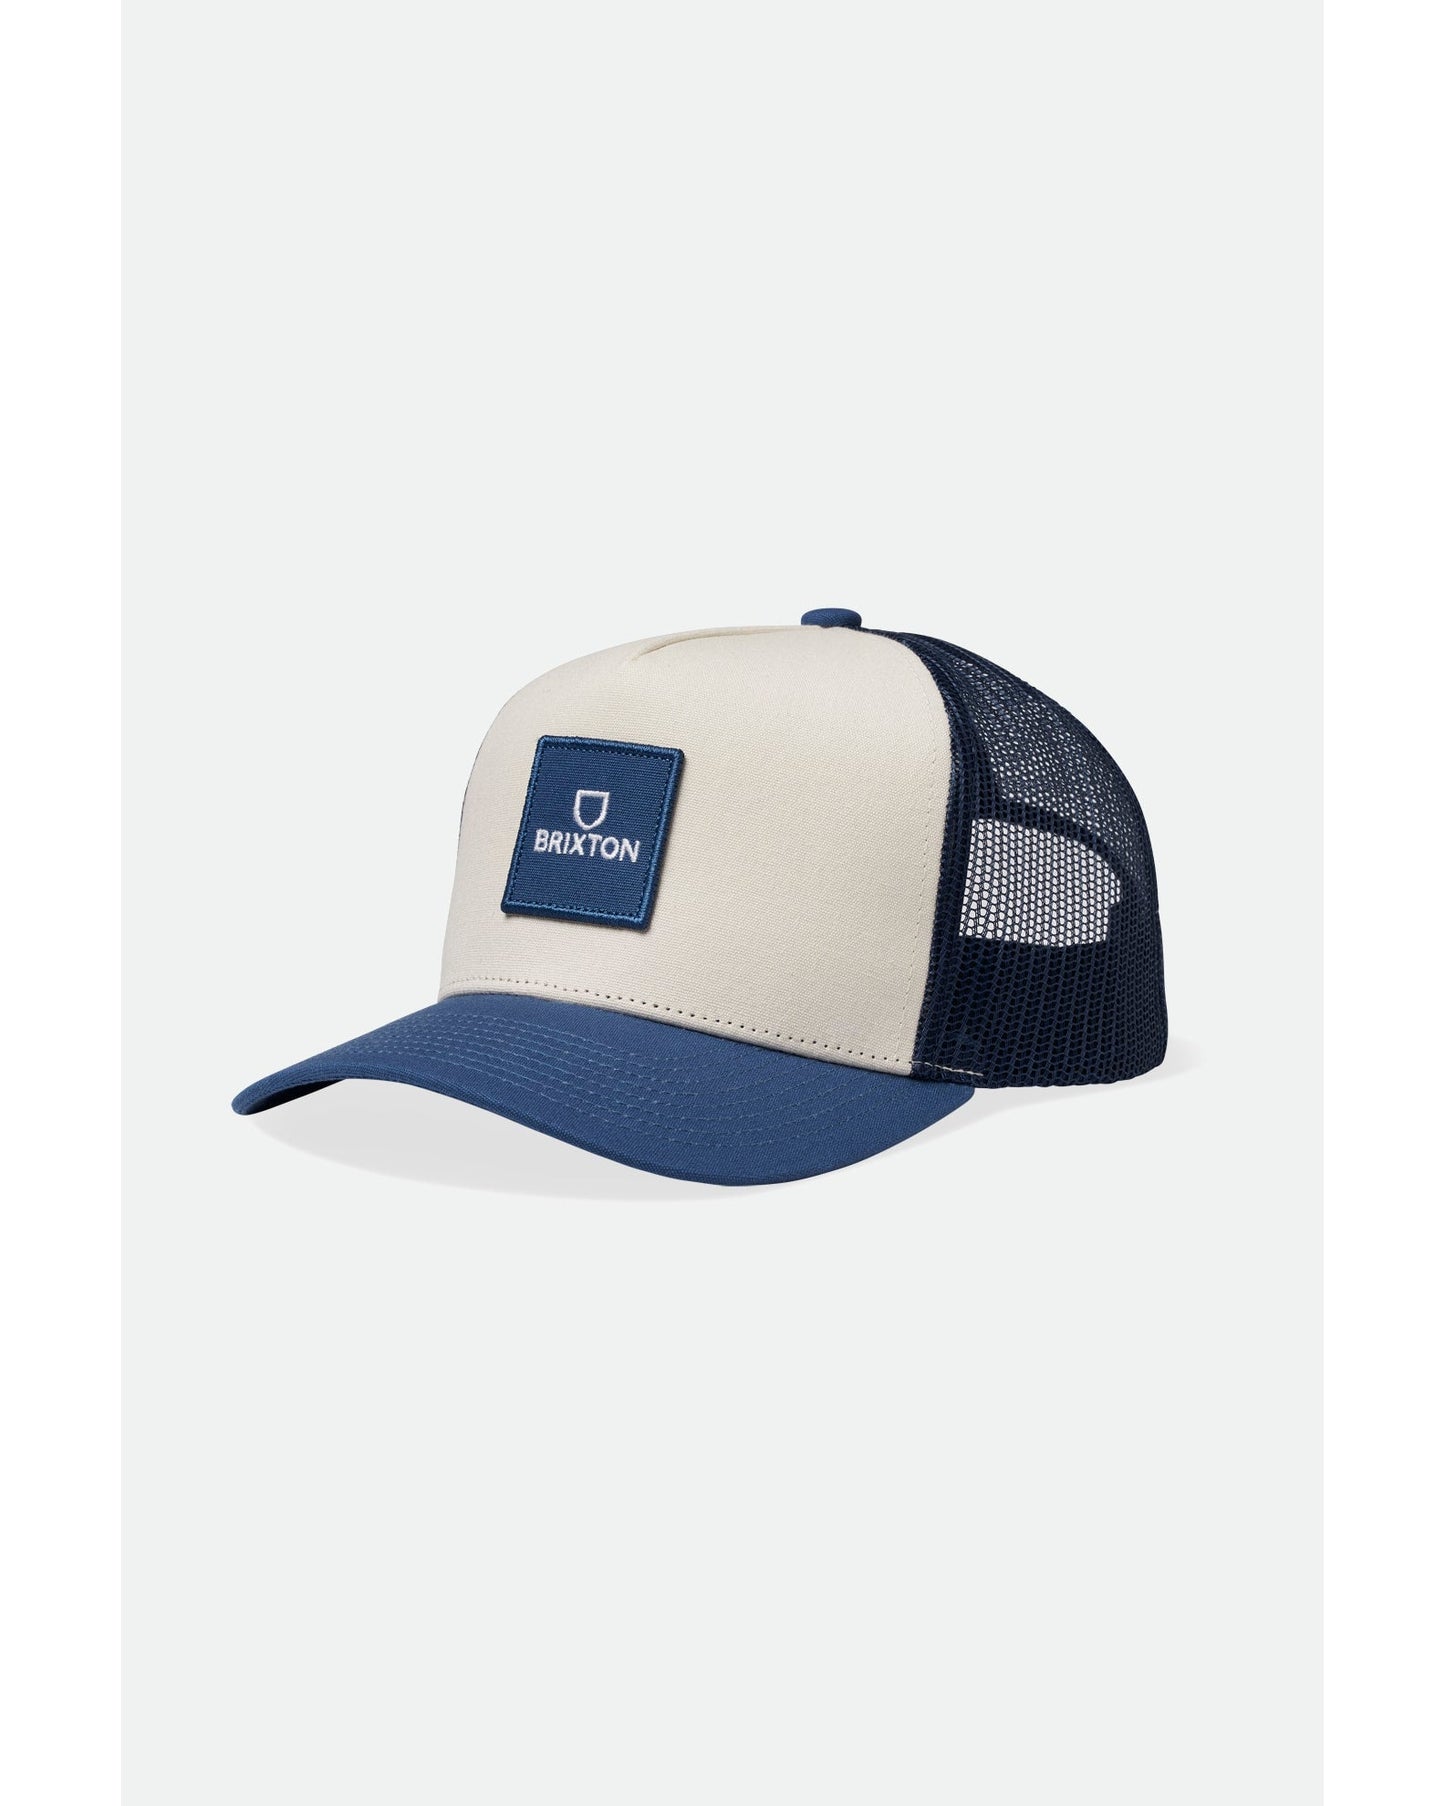 ALPHA BLOCK X C MP MESH CAP Accessories - Mens - Hats Brixton JOE BLUE/WHITE O/S 